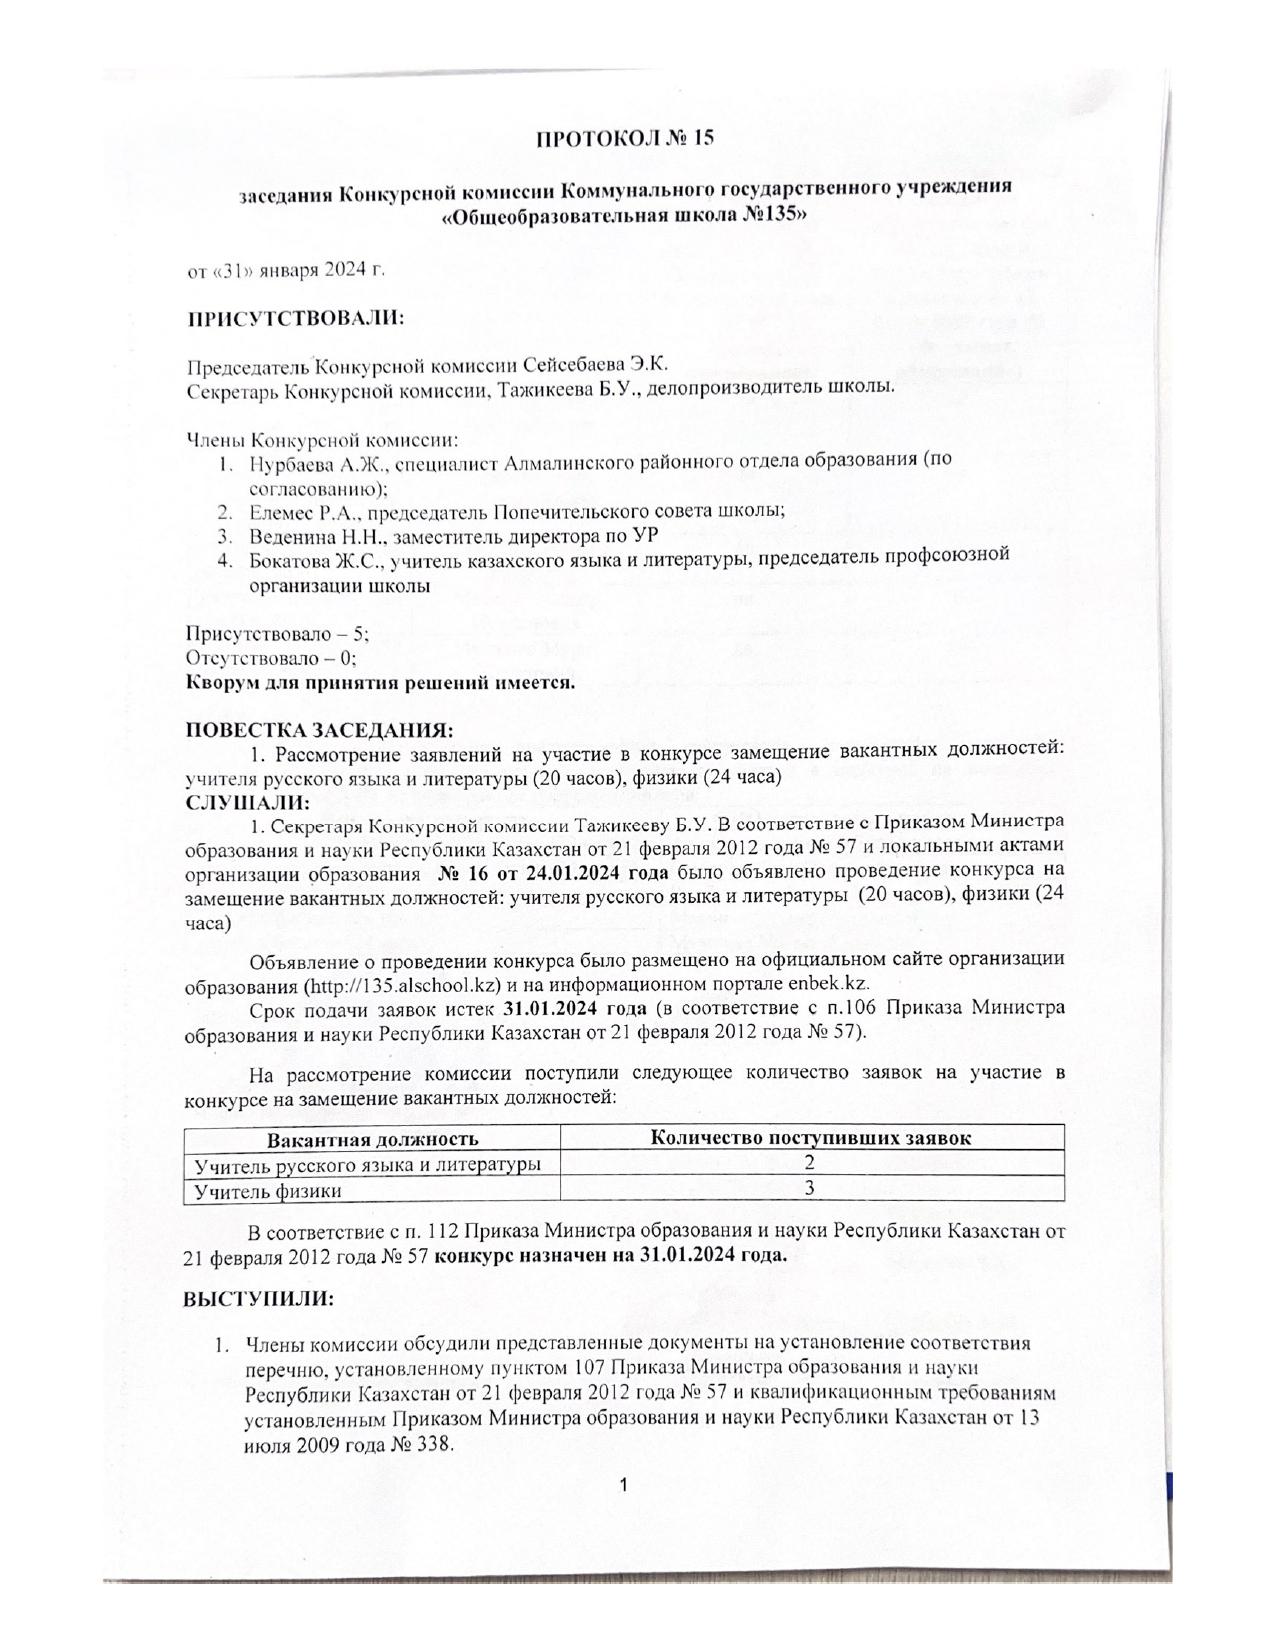 Протокол №15 заседания Конкурсной комиссии Коммунального государственного учреждения "Общеобразовательная школа №135"